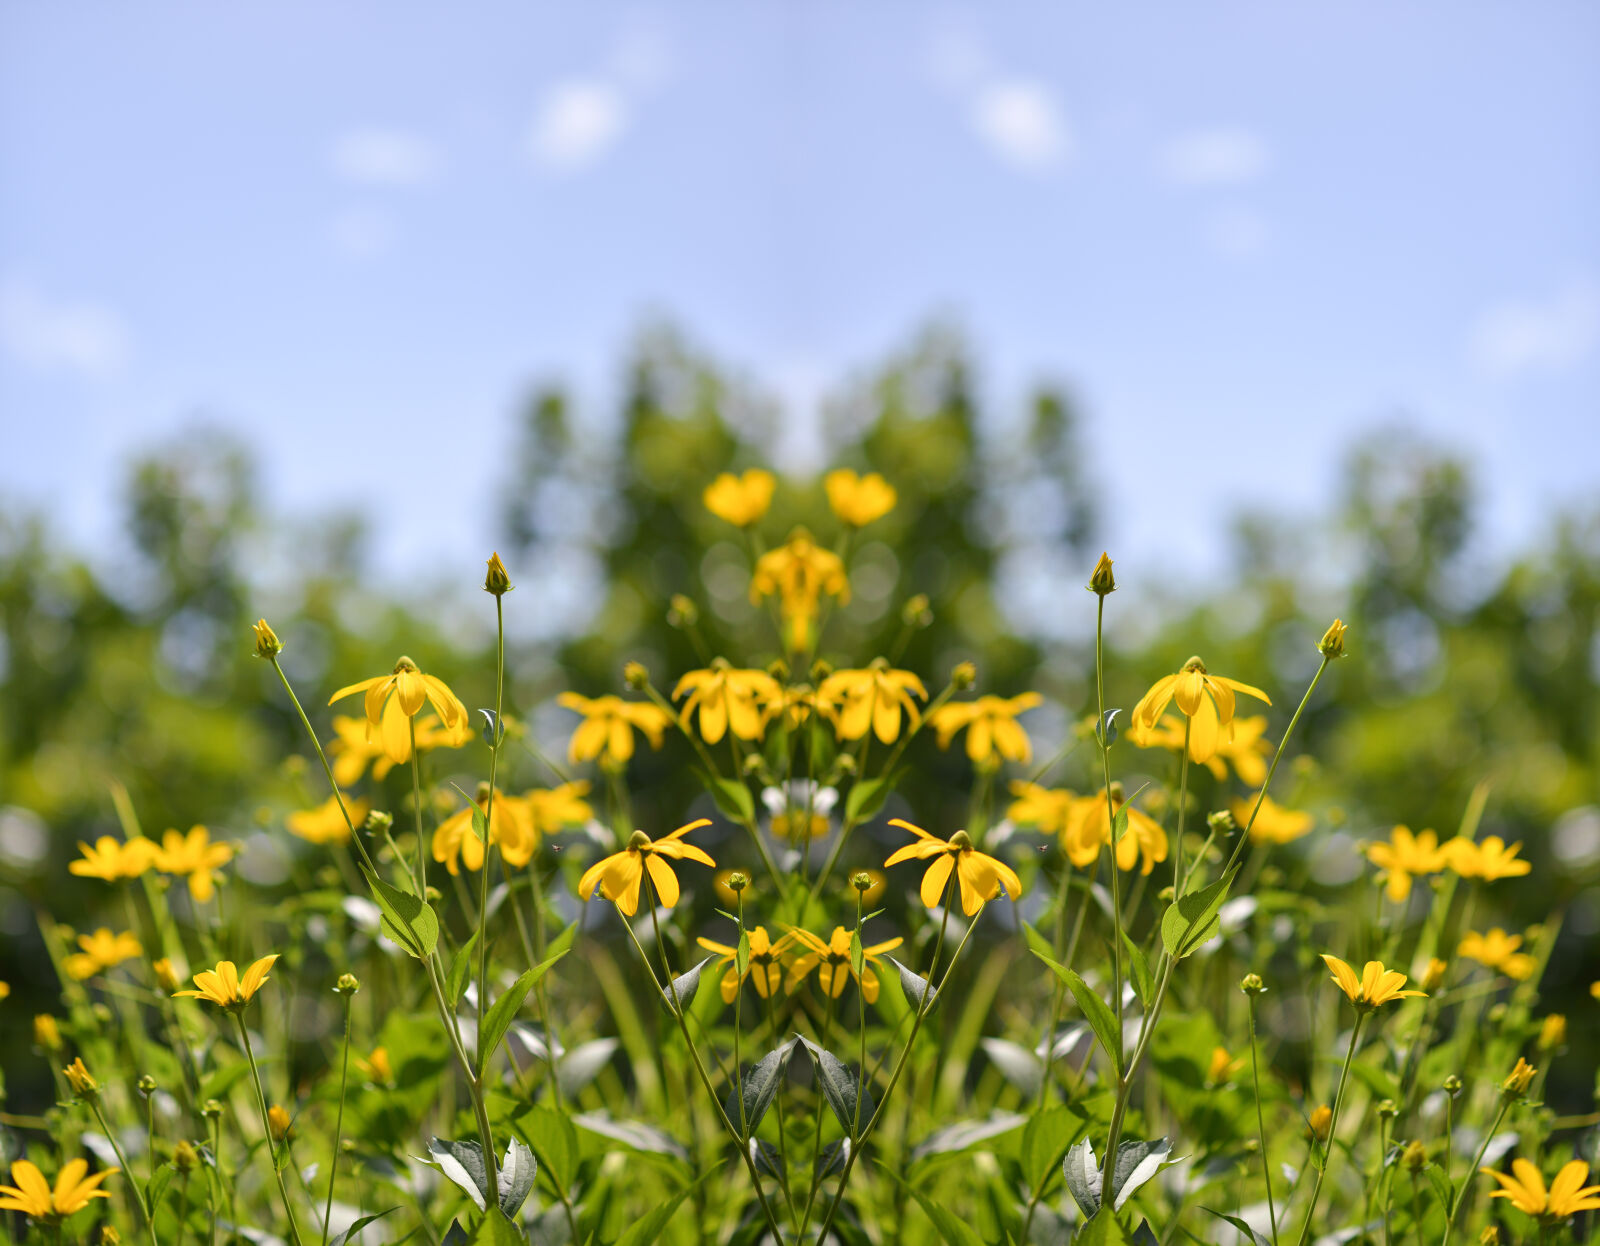 Nikon AF-S Nikkor 85mm F1.8G sample photo. Nature, flowers, summer, garden photography